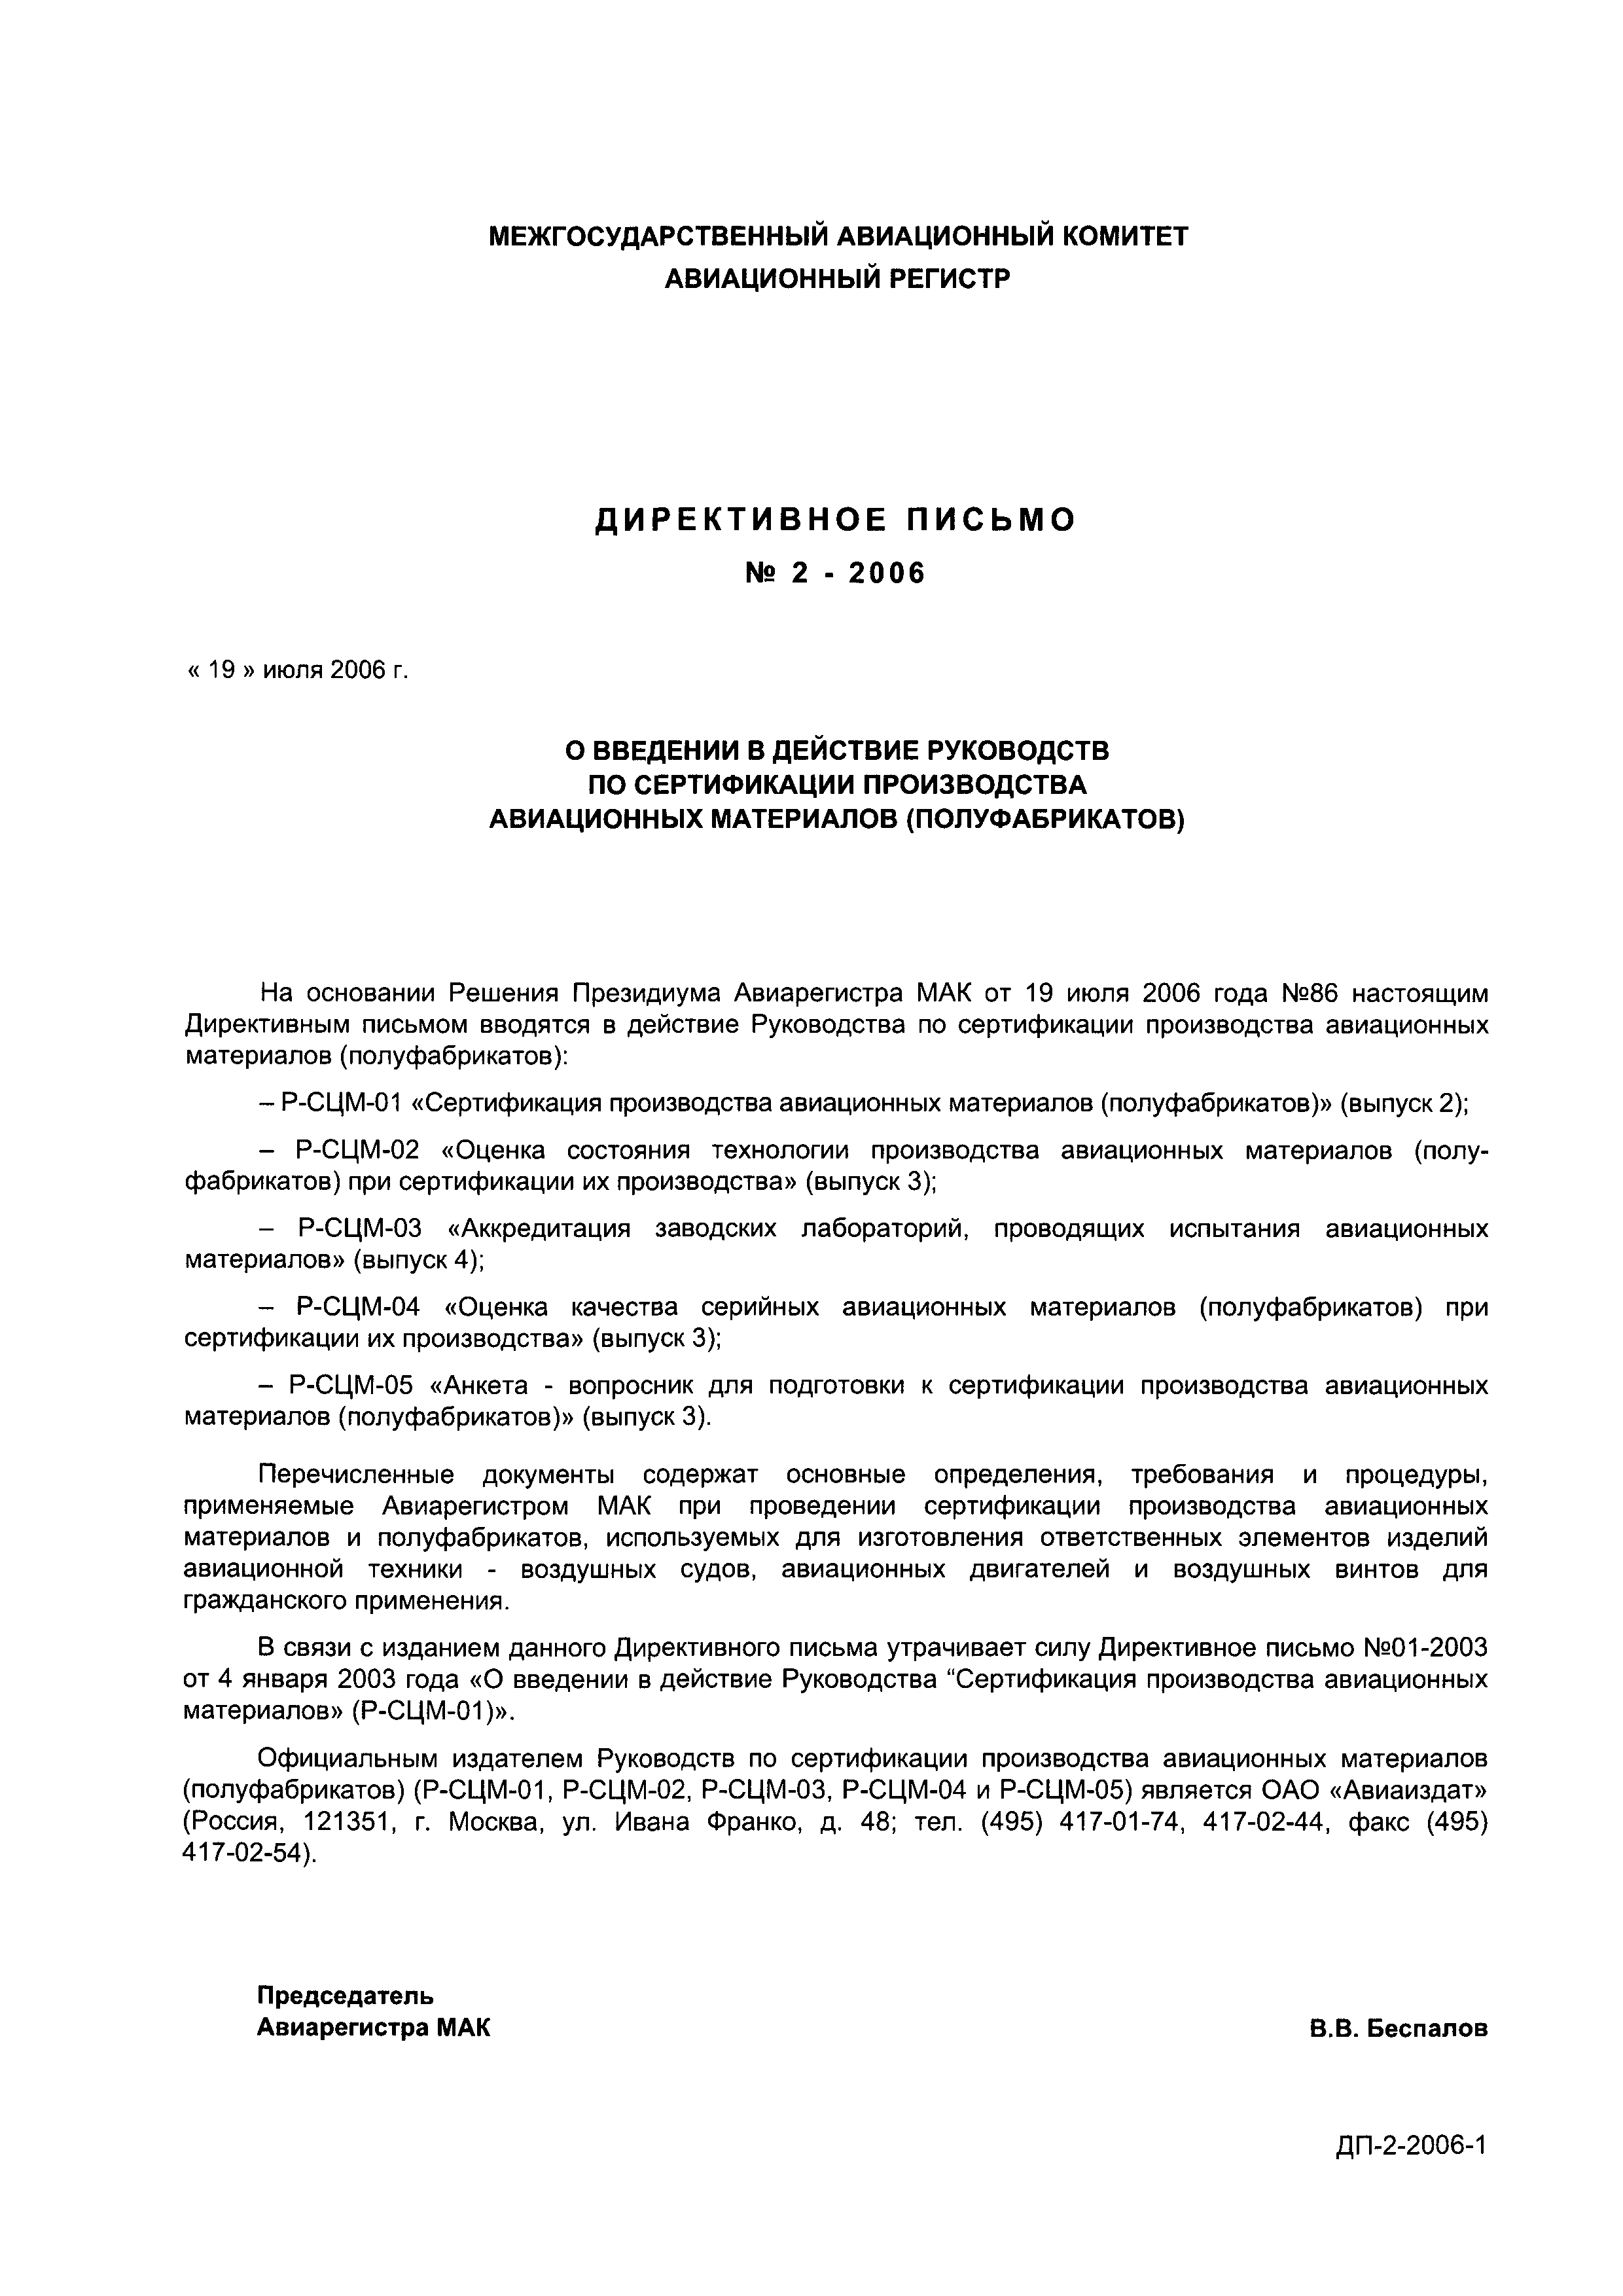 Директивное письмо 2-2006